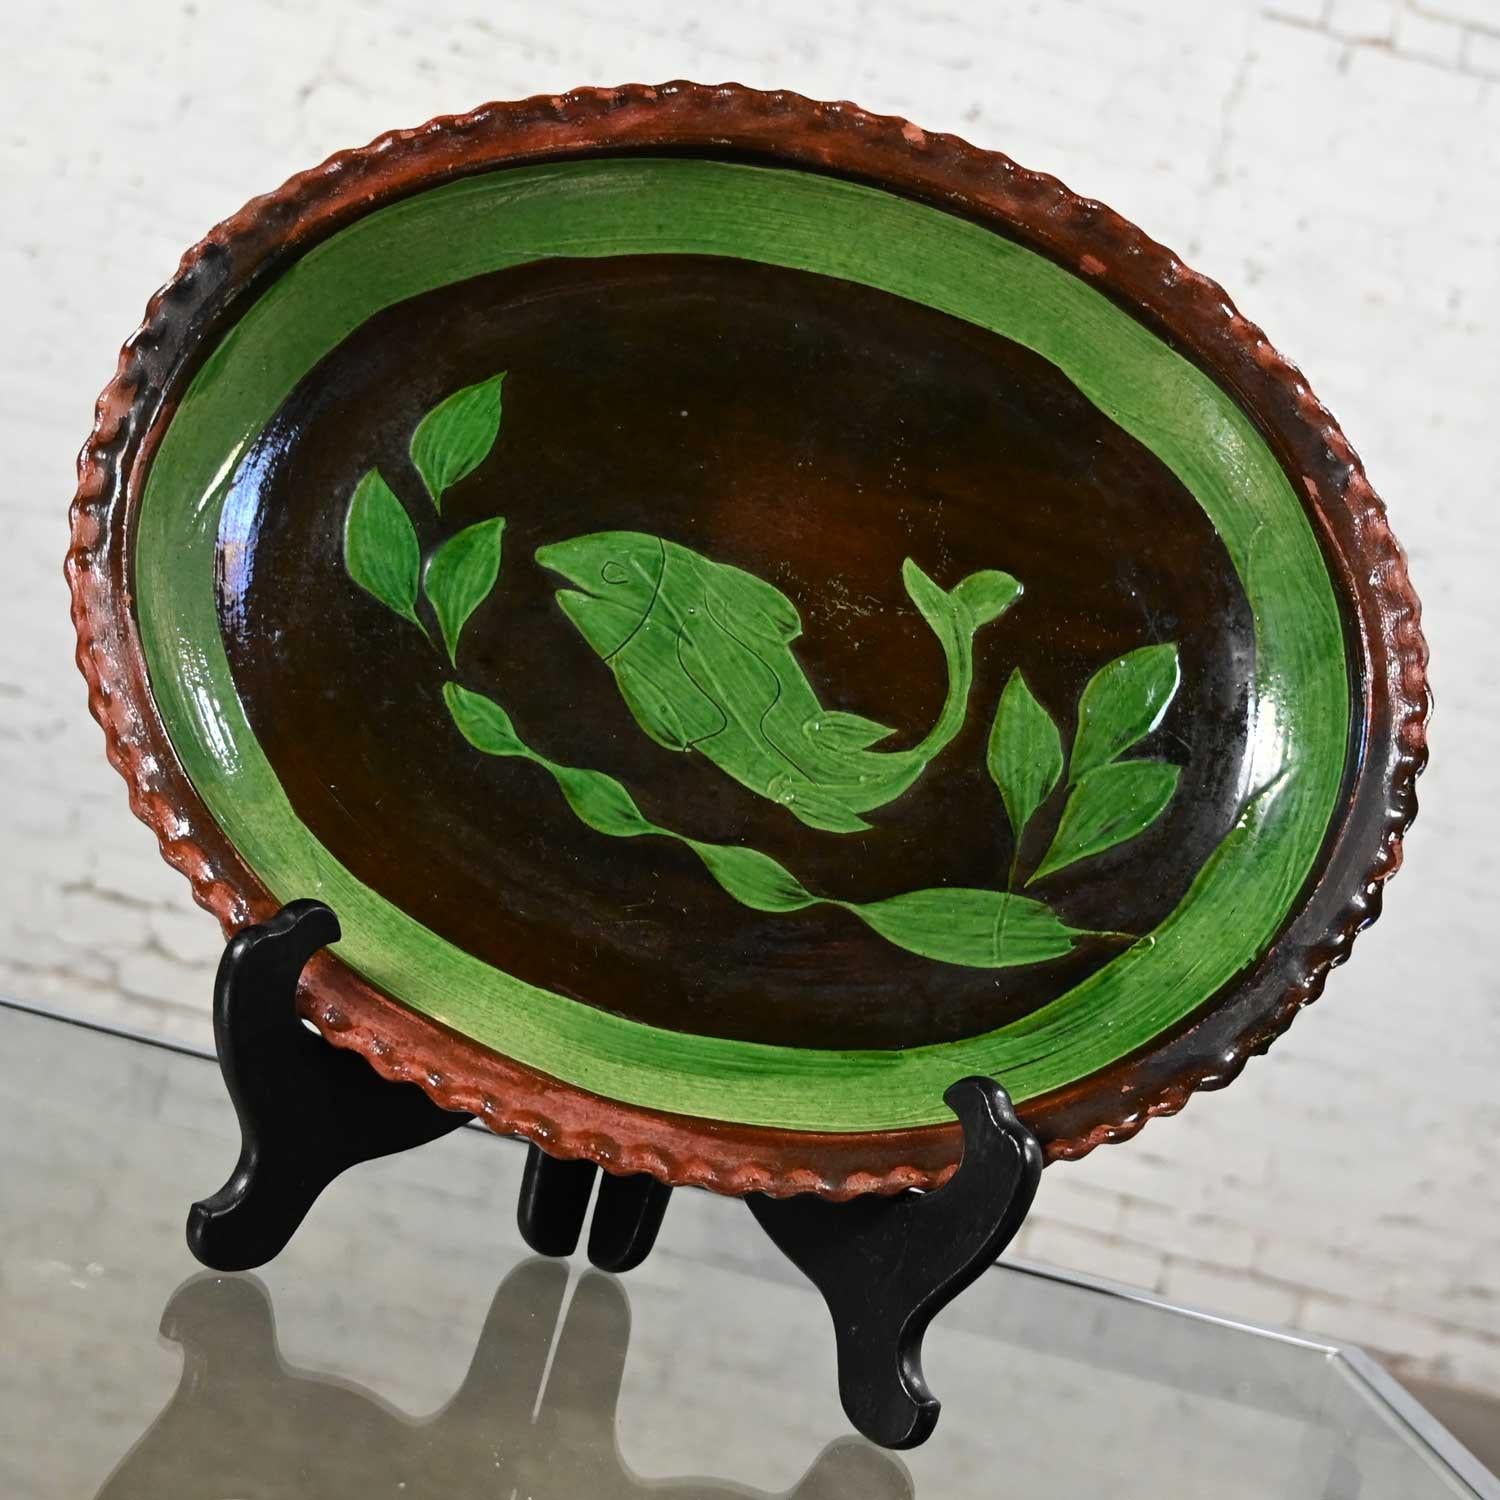 Magnifique plat mexicain Patamban en poterie émaillée verte et brune, peint à la main et représentant un poisson. Très bon état, tout en gardant à l'esprit qu'il s'agit d'un produit vintage et non neuf, qui présentera donc des signes d'utilisation